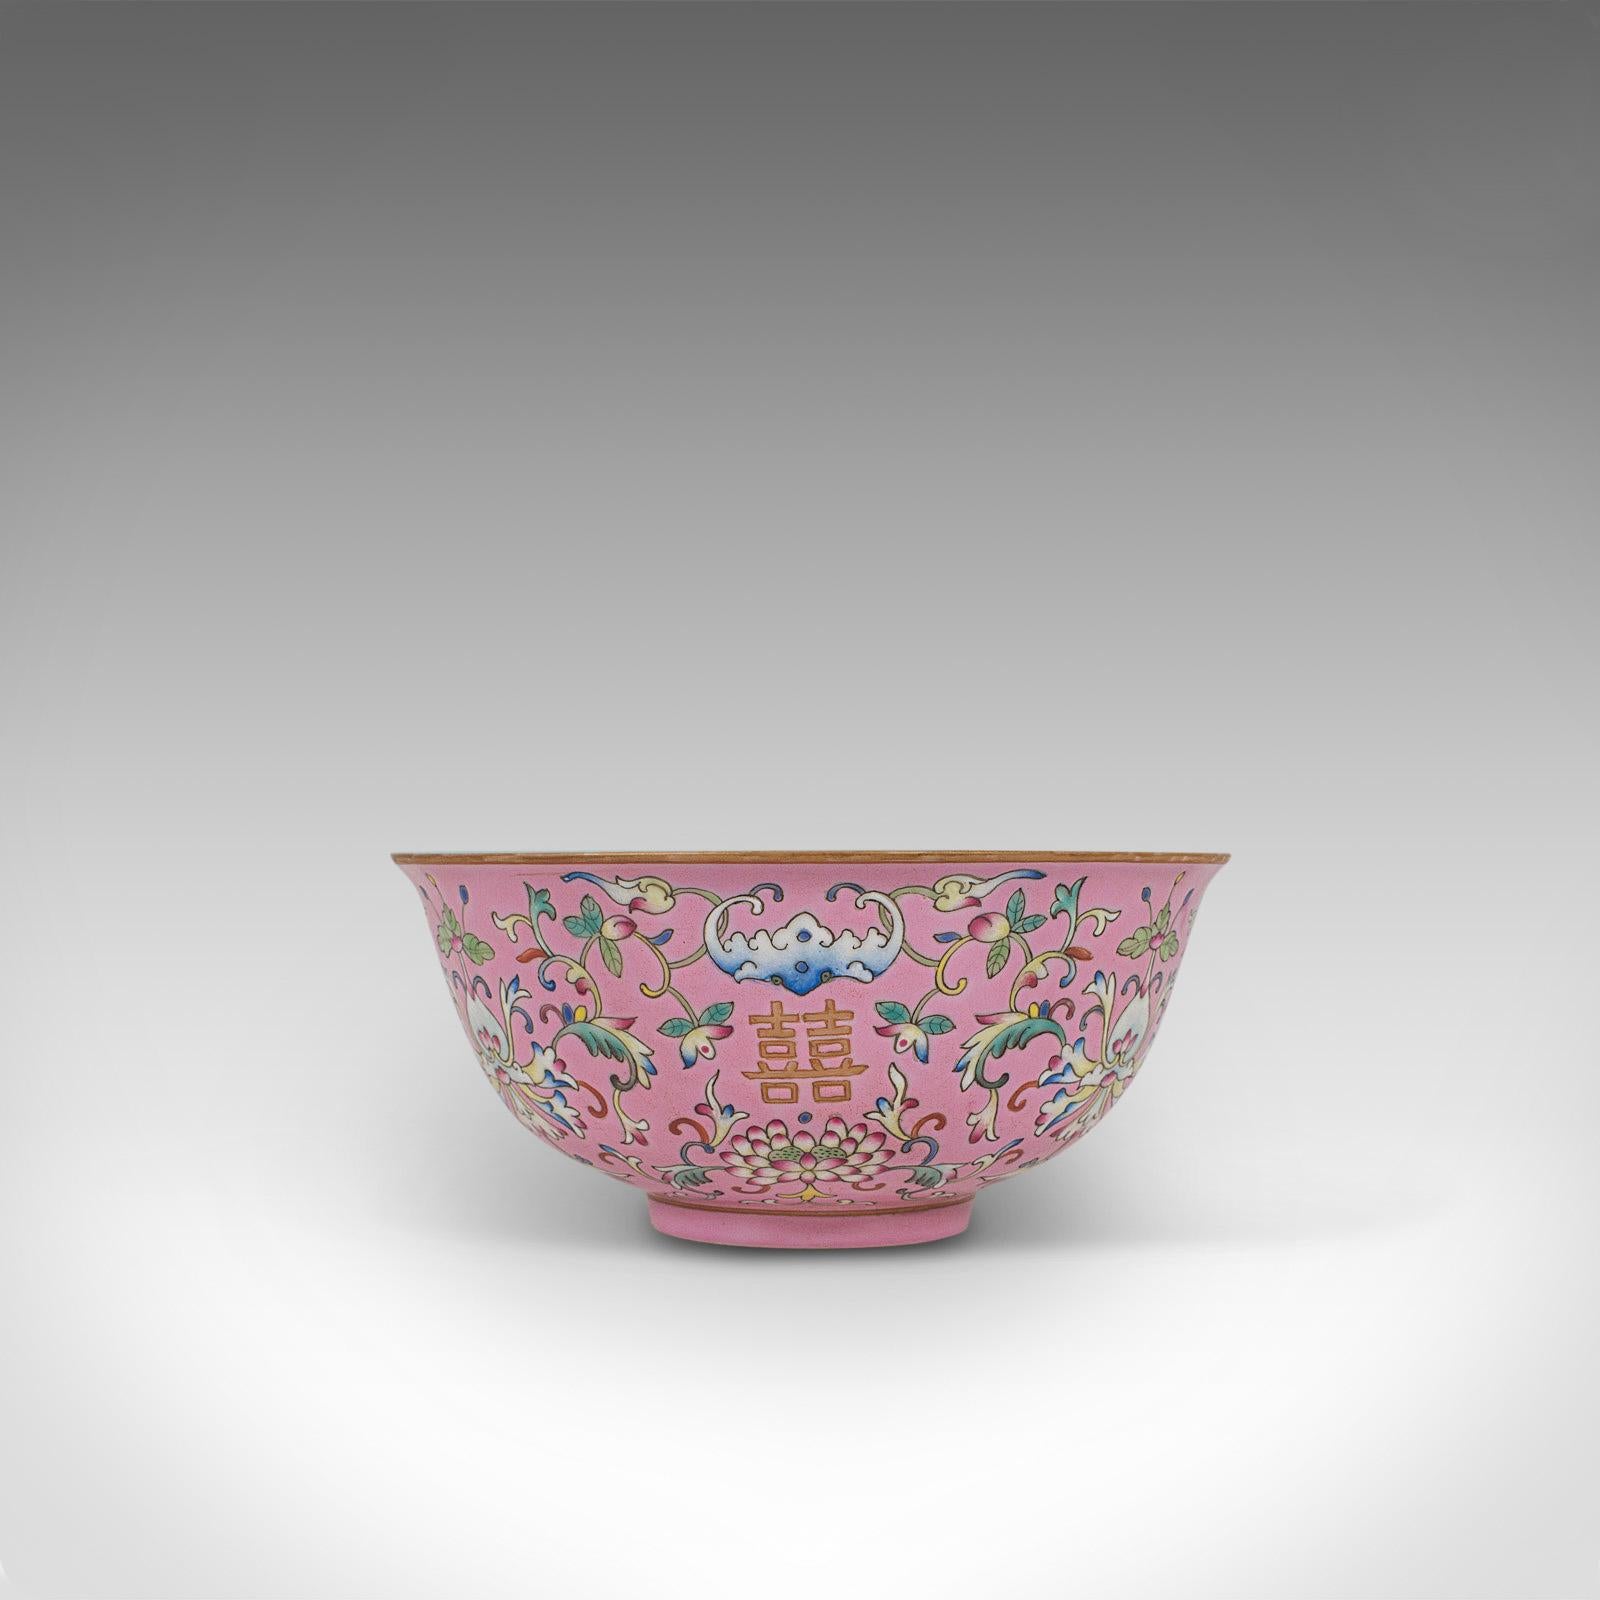 Antique Decorative Marriage Bowl, Chinese, Ceramic, Ceremonial, Dish, circa 1880 2